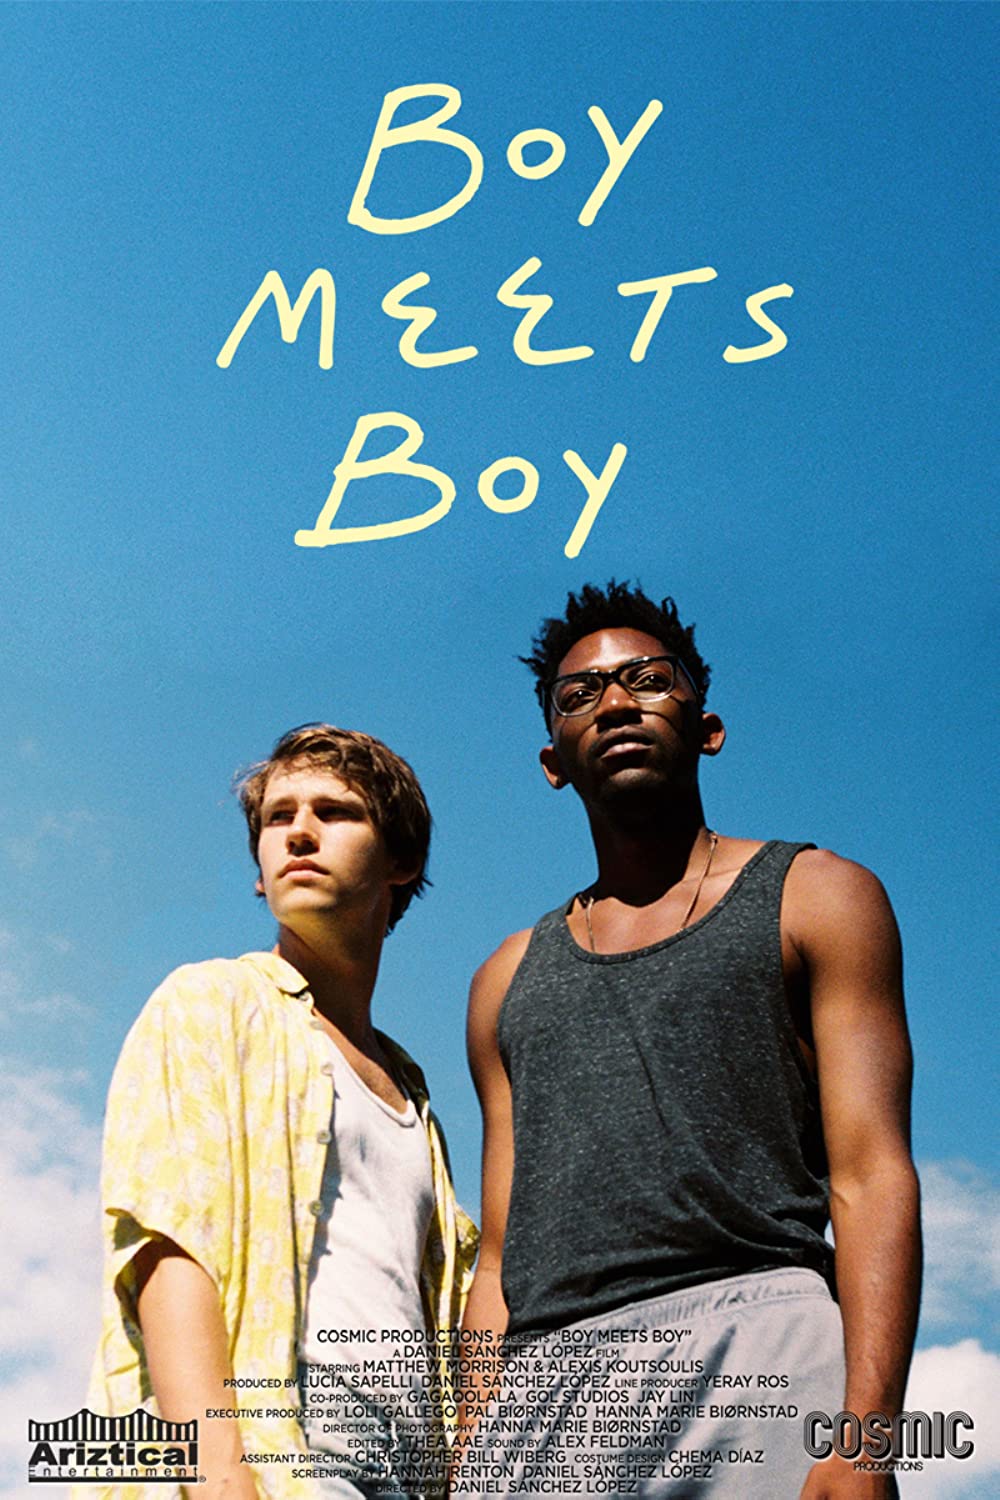 Filmbeschreibung zu Boy meets Boy